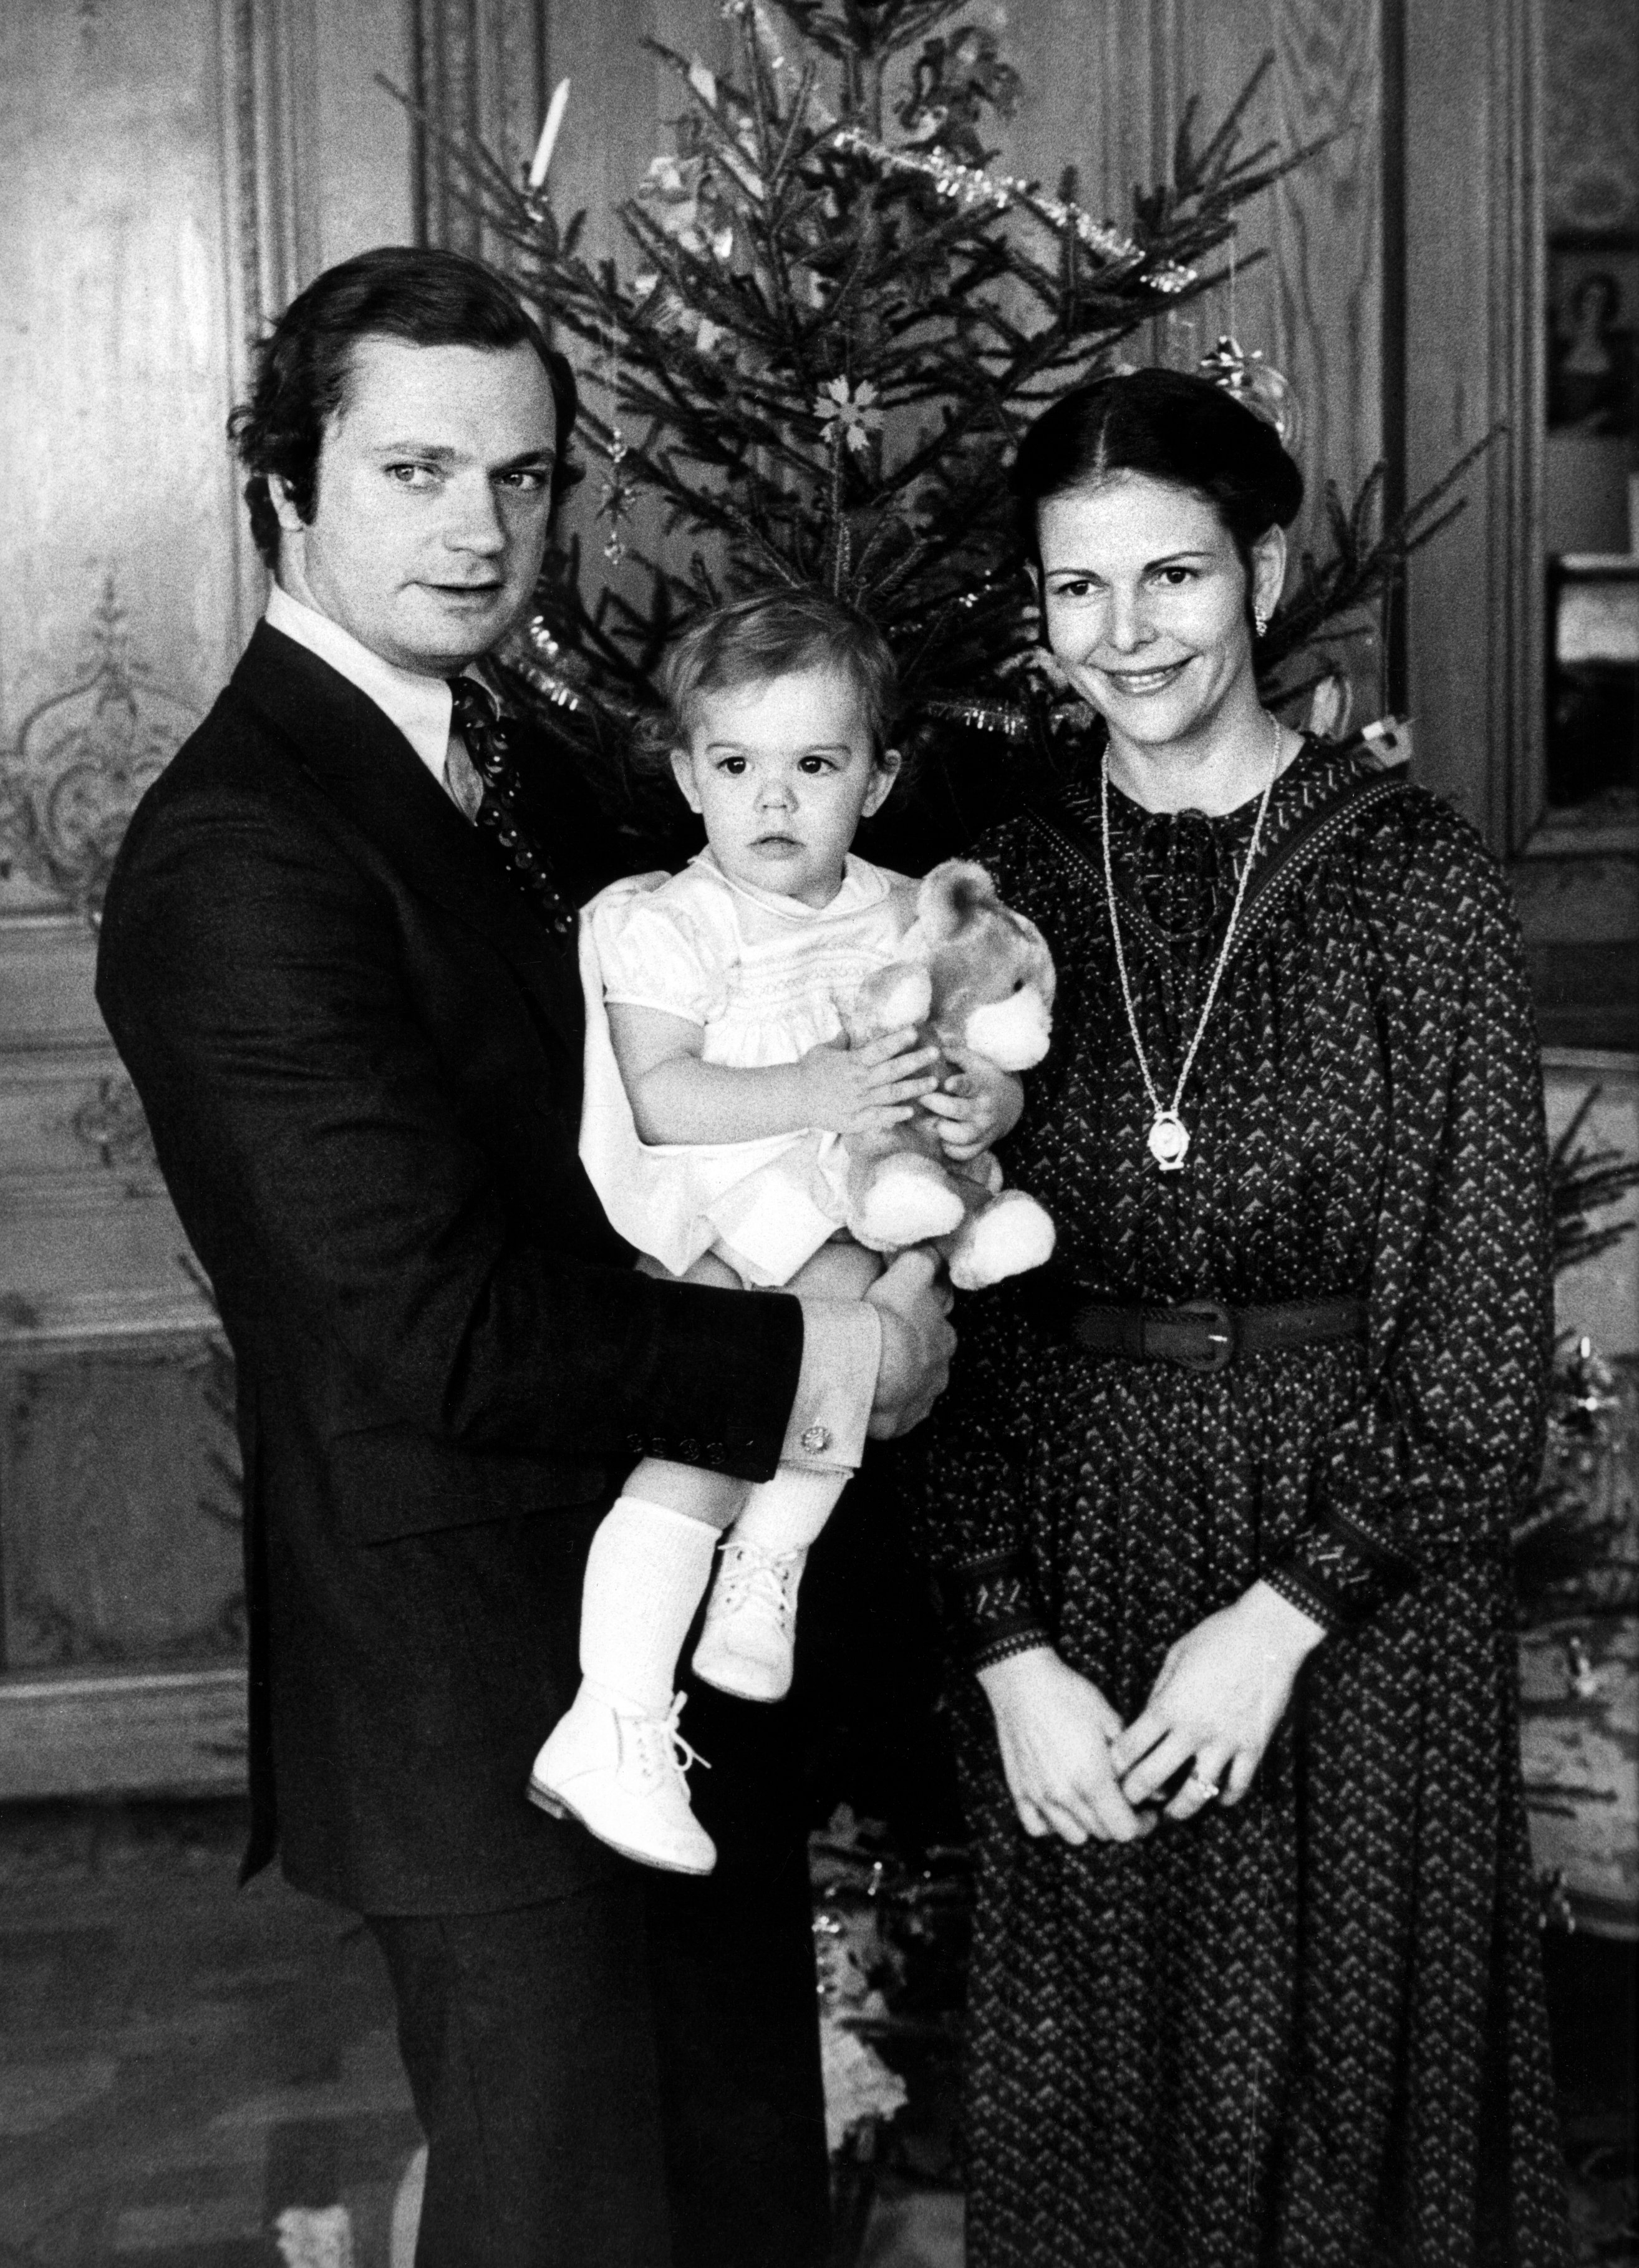 1978. Kronprinsessan Victoria är fortfarande ensambarn och firar jul med pappa kungen och mamma drottningen.